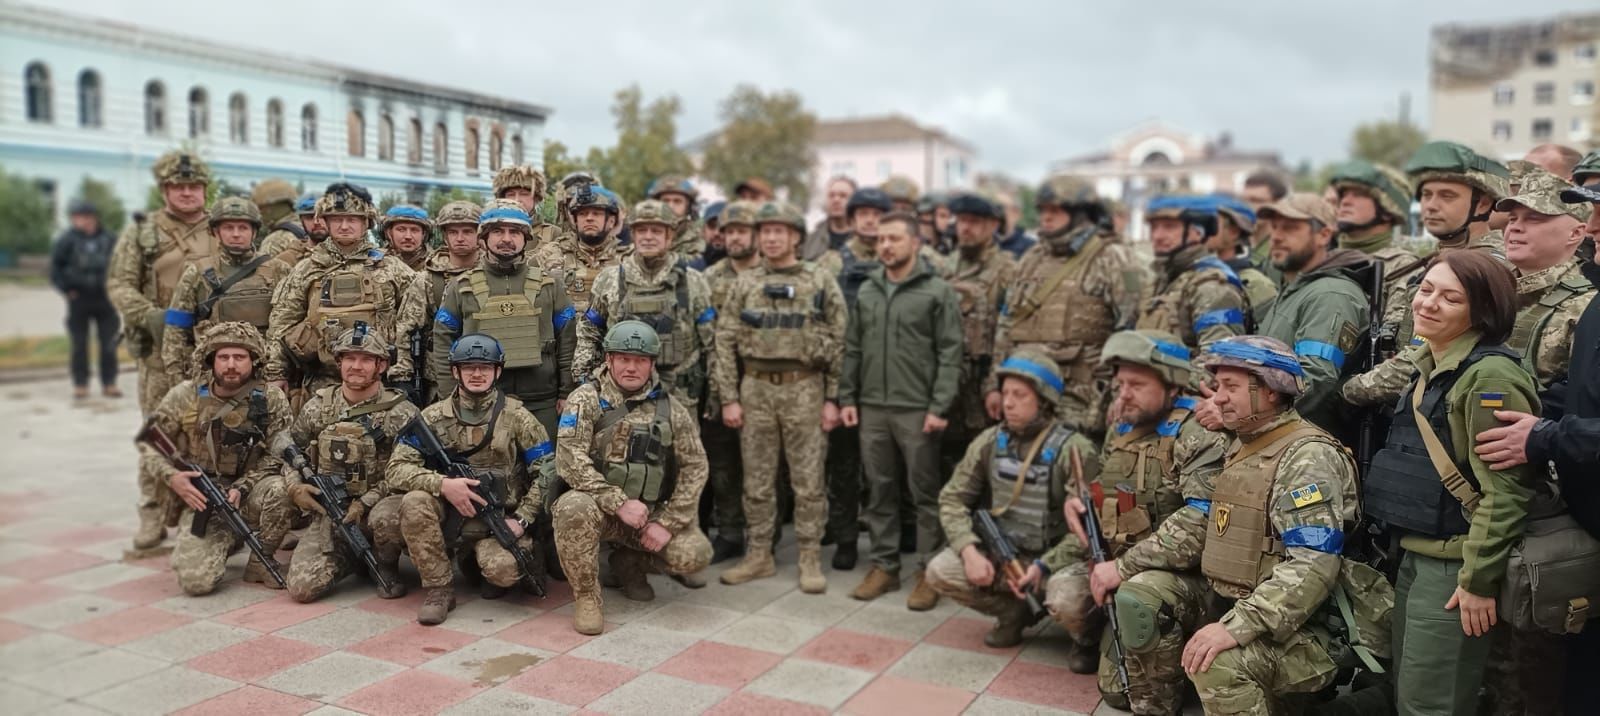 Зеленский приехал в Изюм, подняв Флаг Украины вместе с десантниками: знаковые кадры